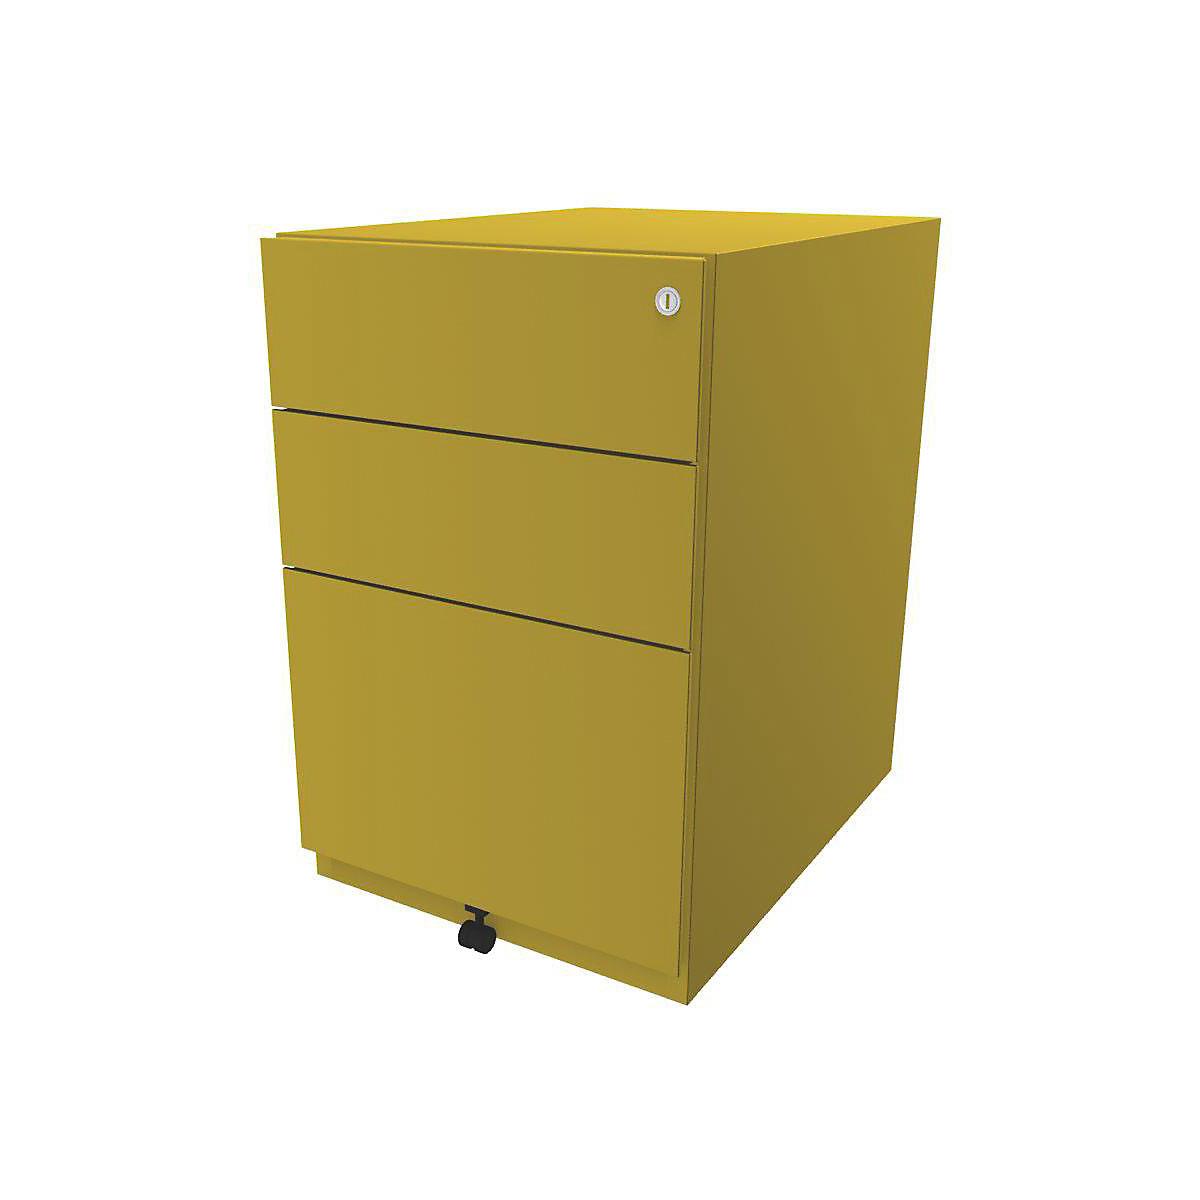 Buck rodante Note™ con 2 cajones universales y 1 archivador colgante – BISLEY, H x A x P 645 x 420 x 565 mm, amarillo-10